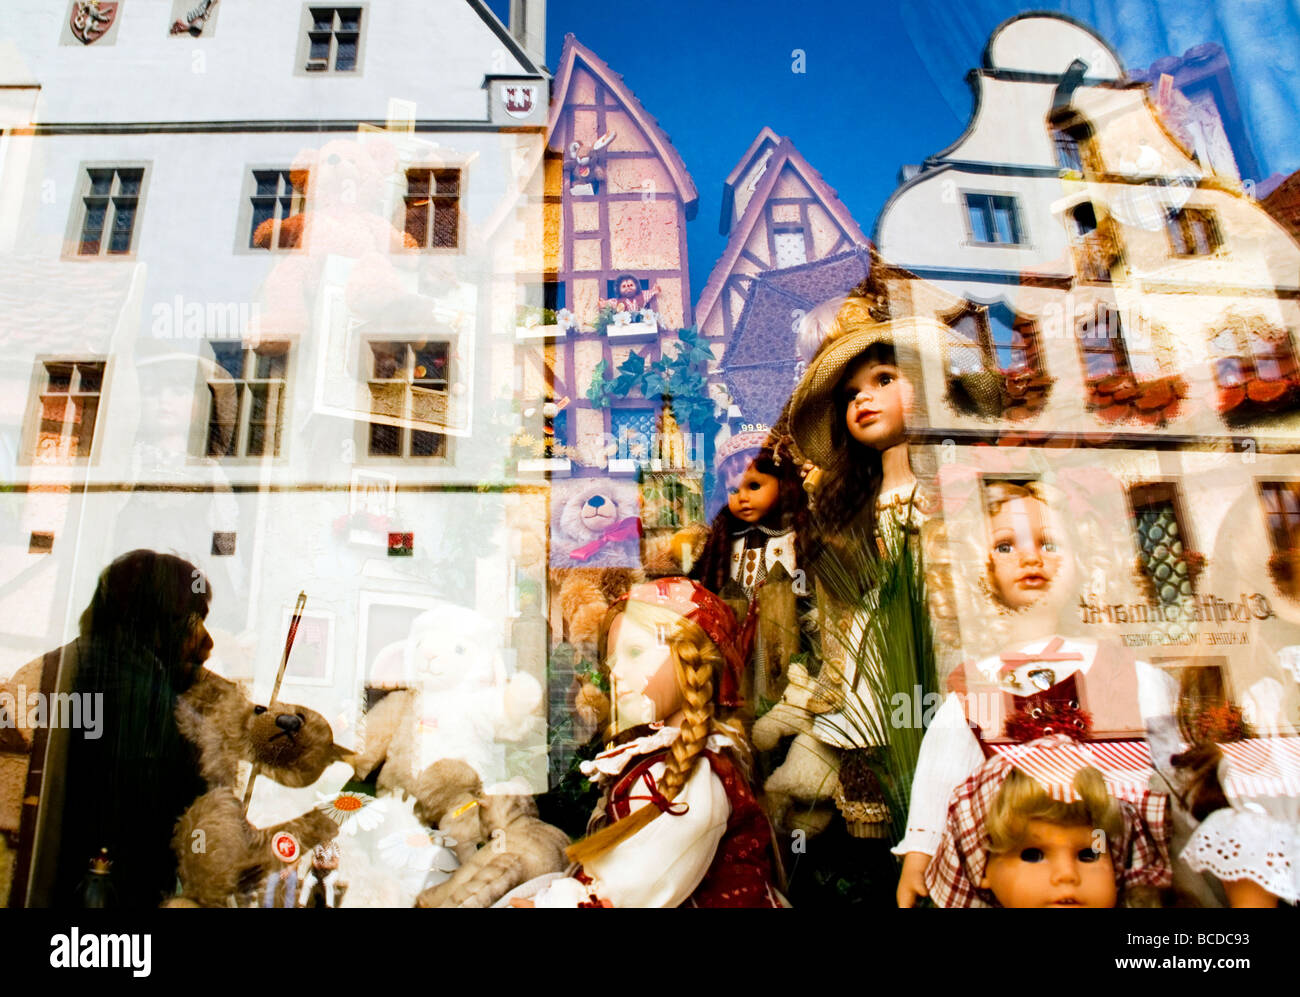 Rothenburg Ob der Tauber mittelalterliche alte Stadtarchitektur mit Straßenmusiker spiegelt sich im Fenster der Spielzeug-Shop mit Puppen Stockfoto